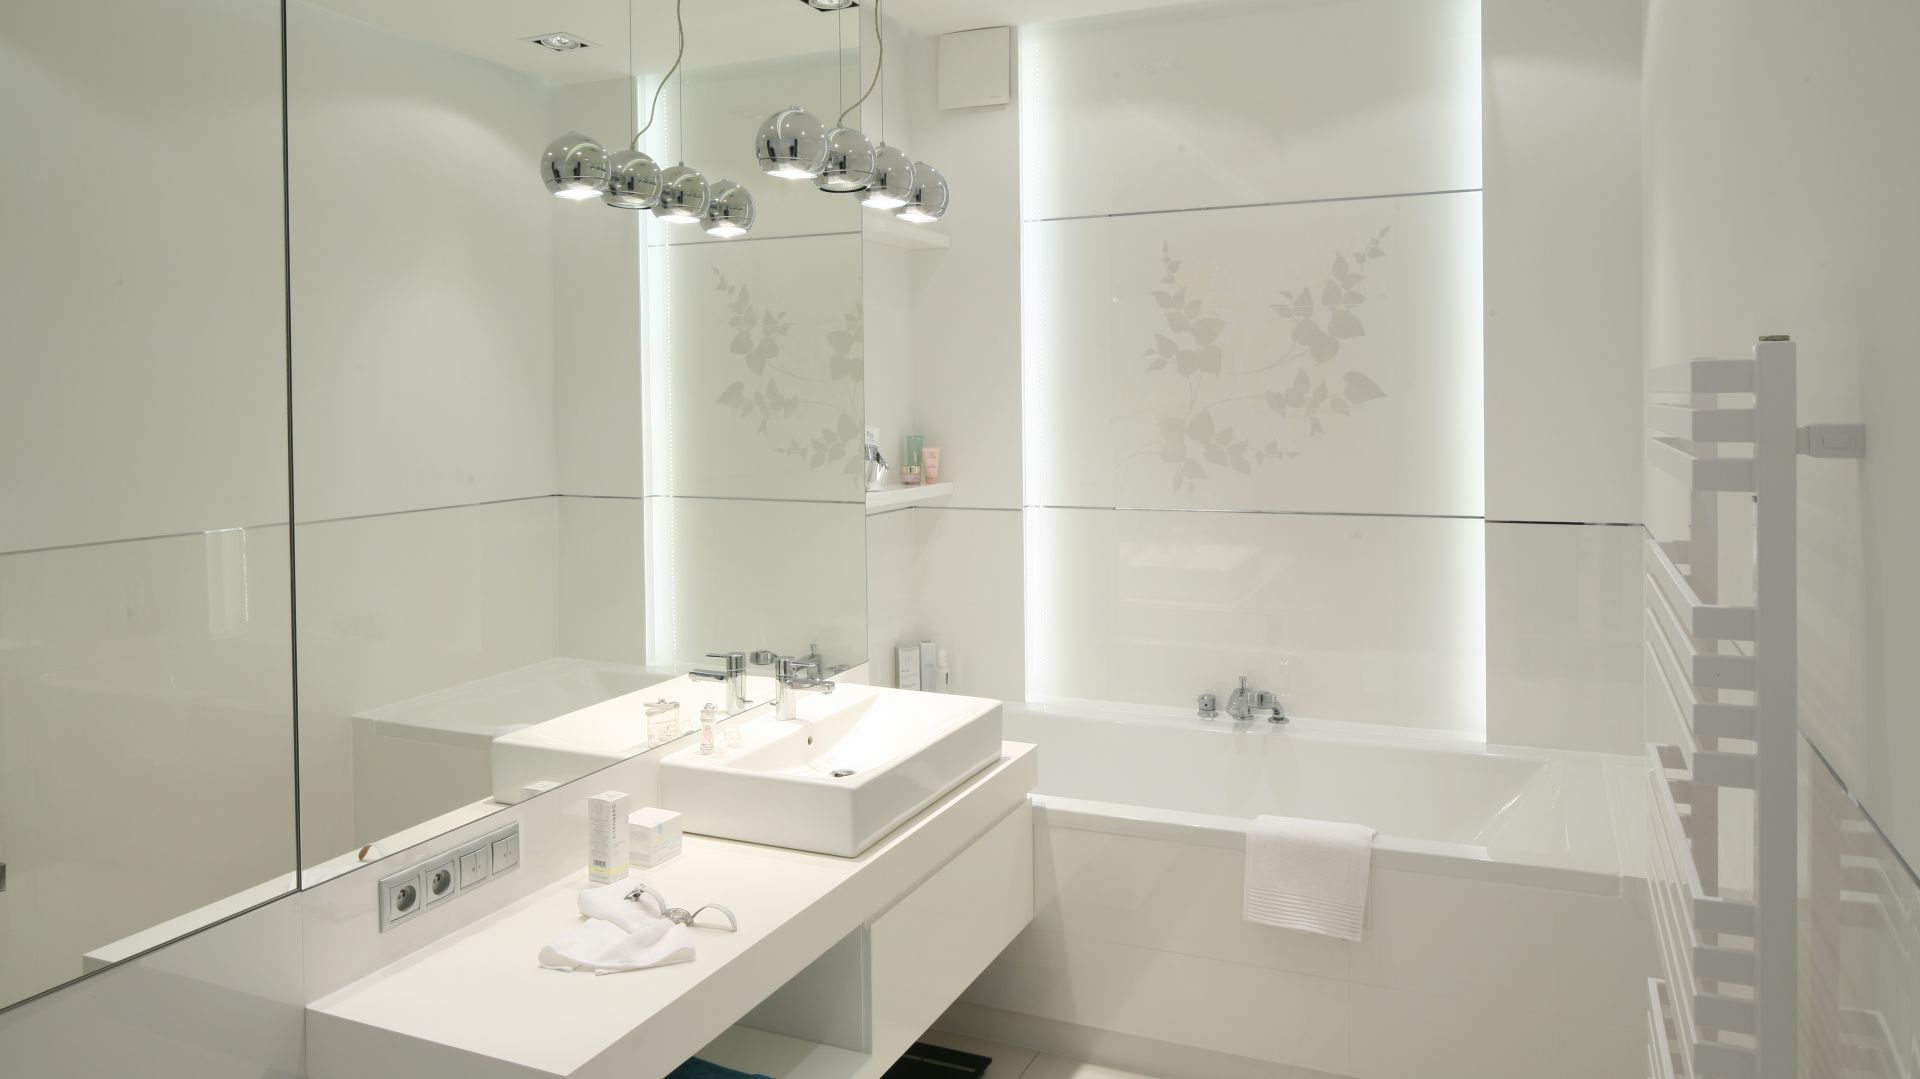 Nowoczesna łazienka: trzy futurystyczne trendy